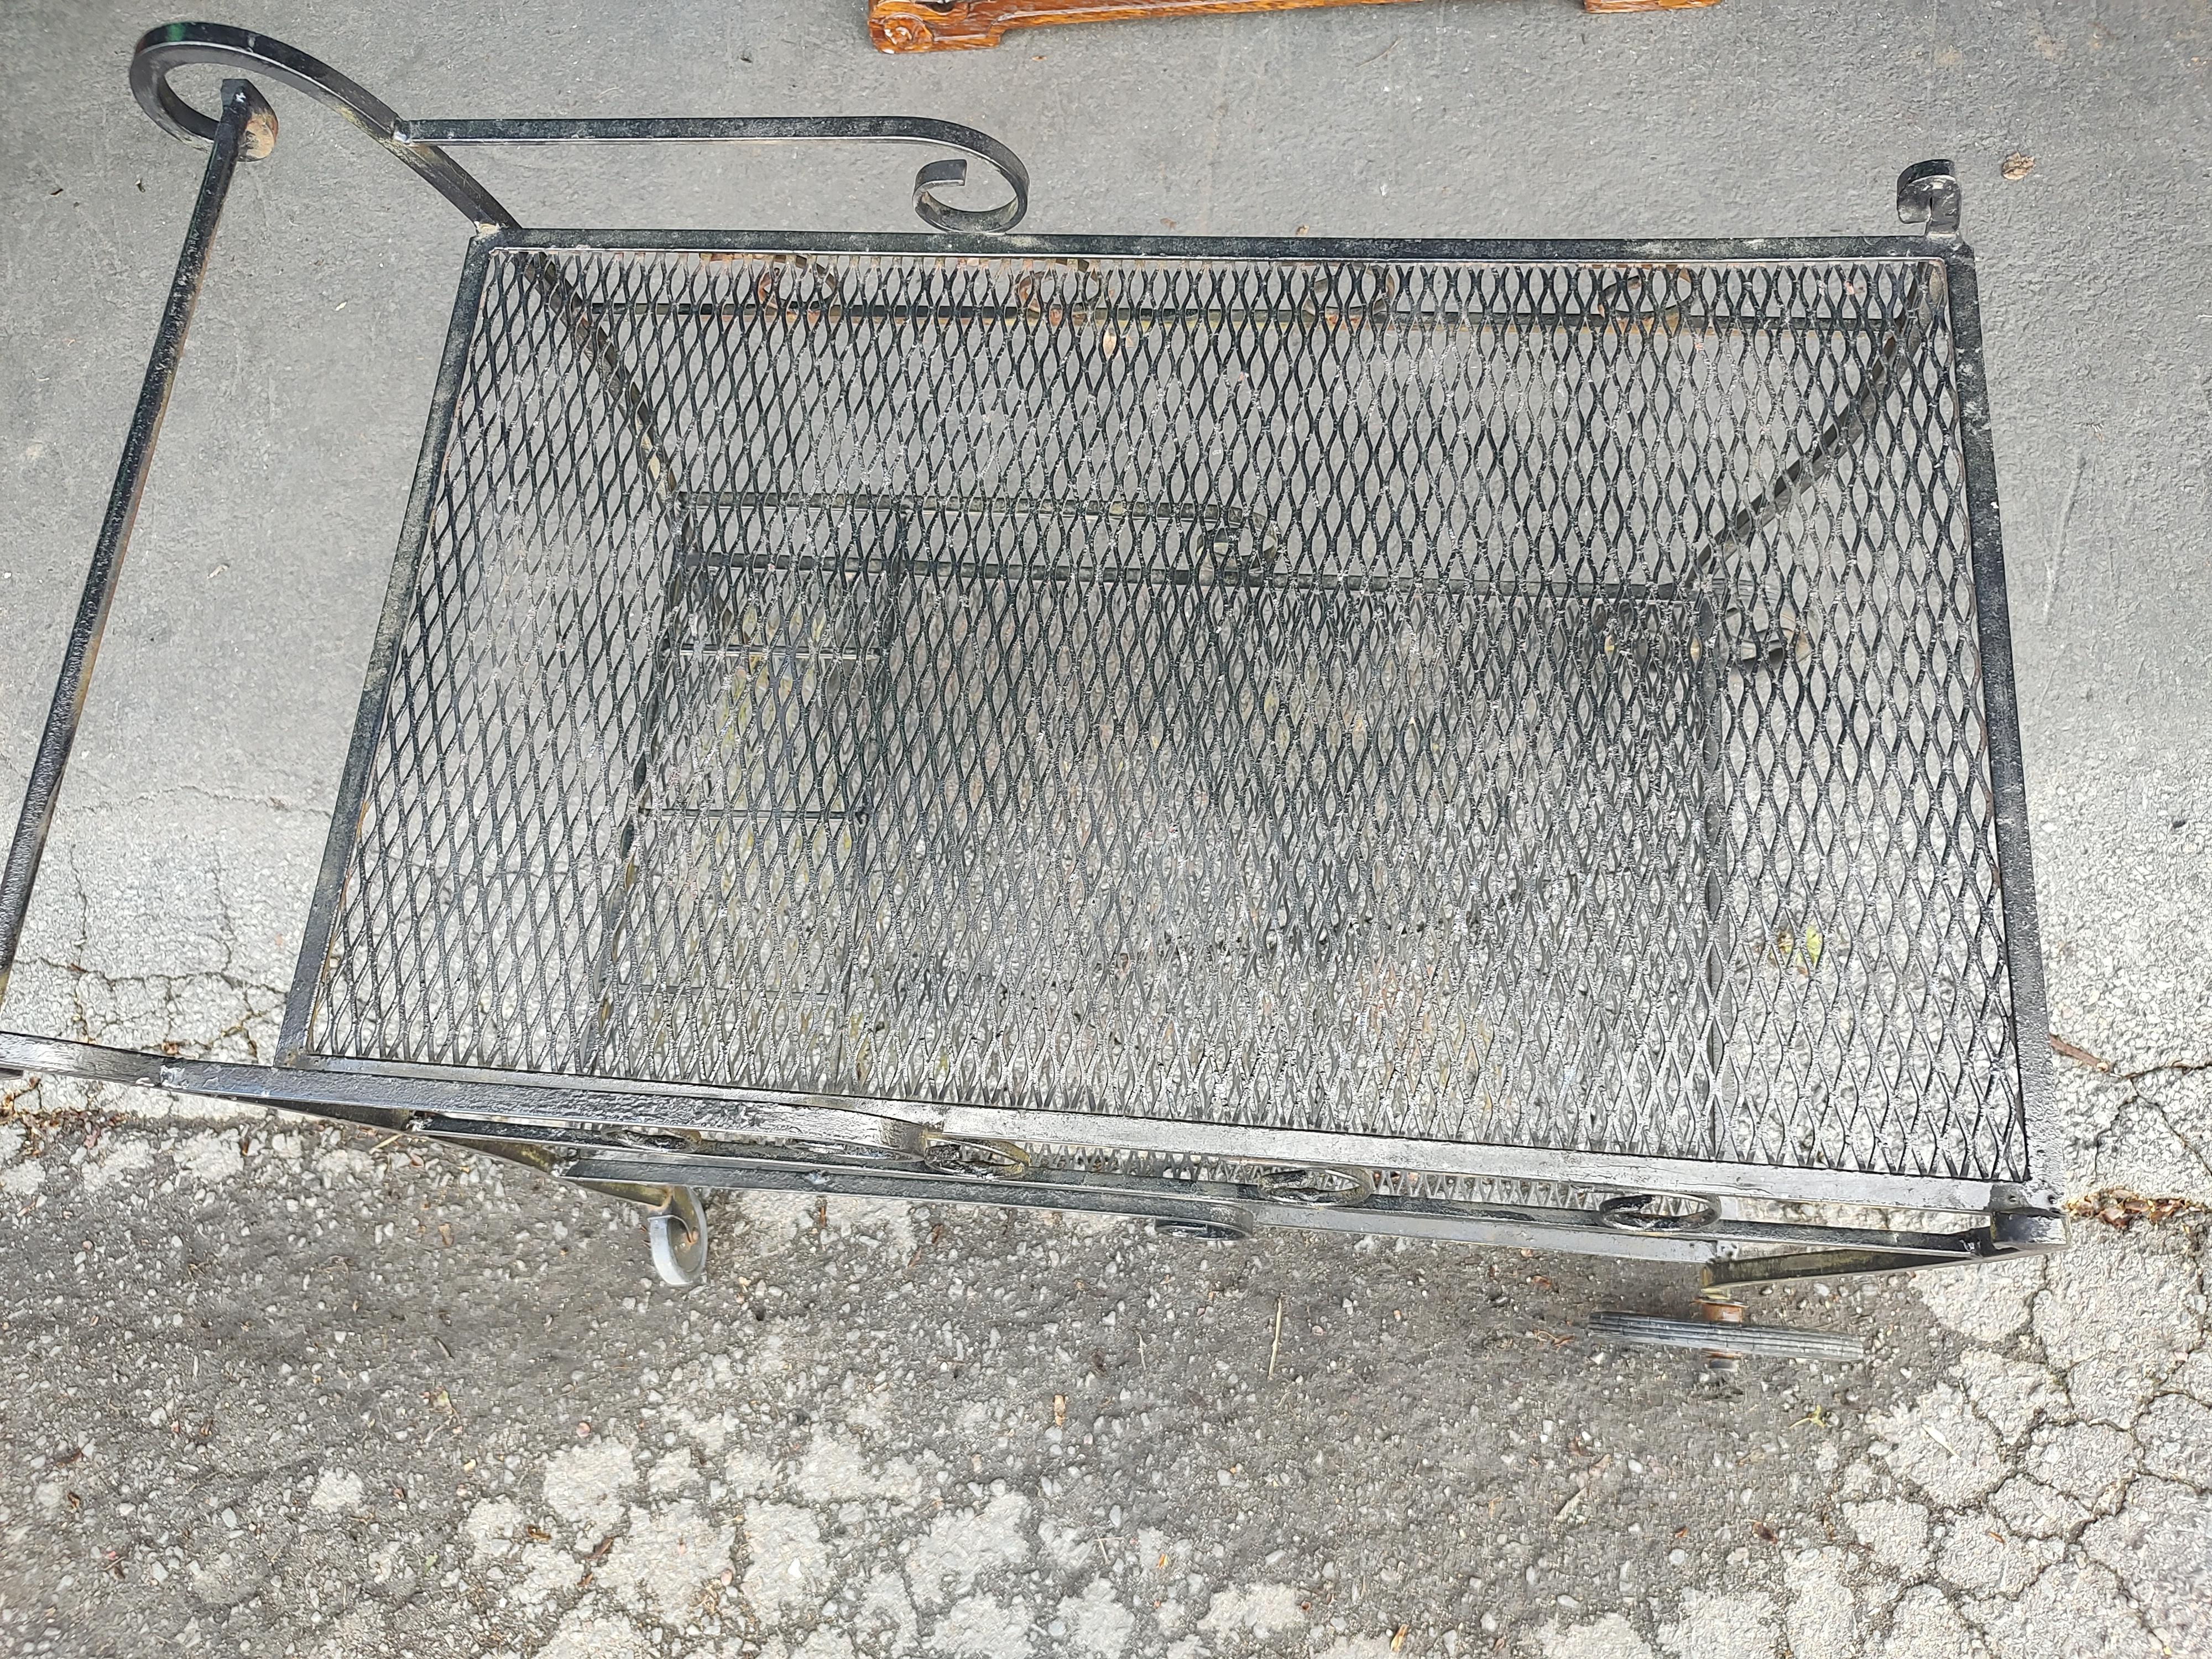 Mid Century Modern Wrought Iron Outdoor Bar Cart mit Schnapsflaschenhalterung (Stahl)